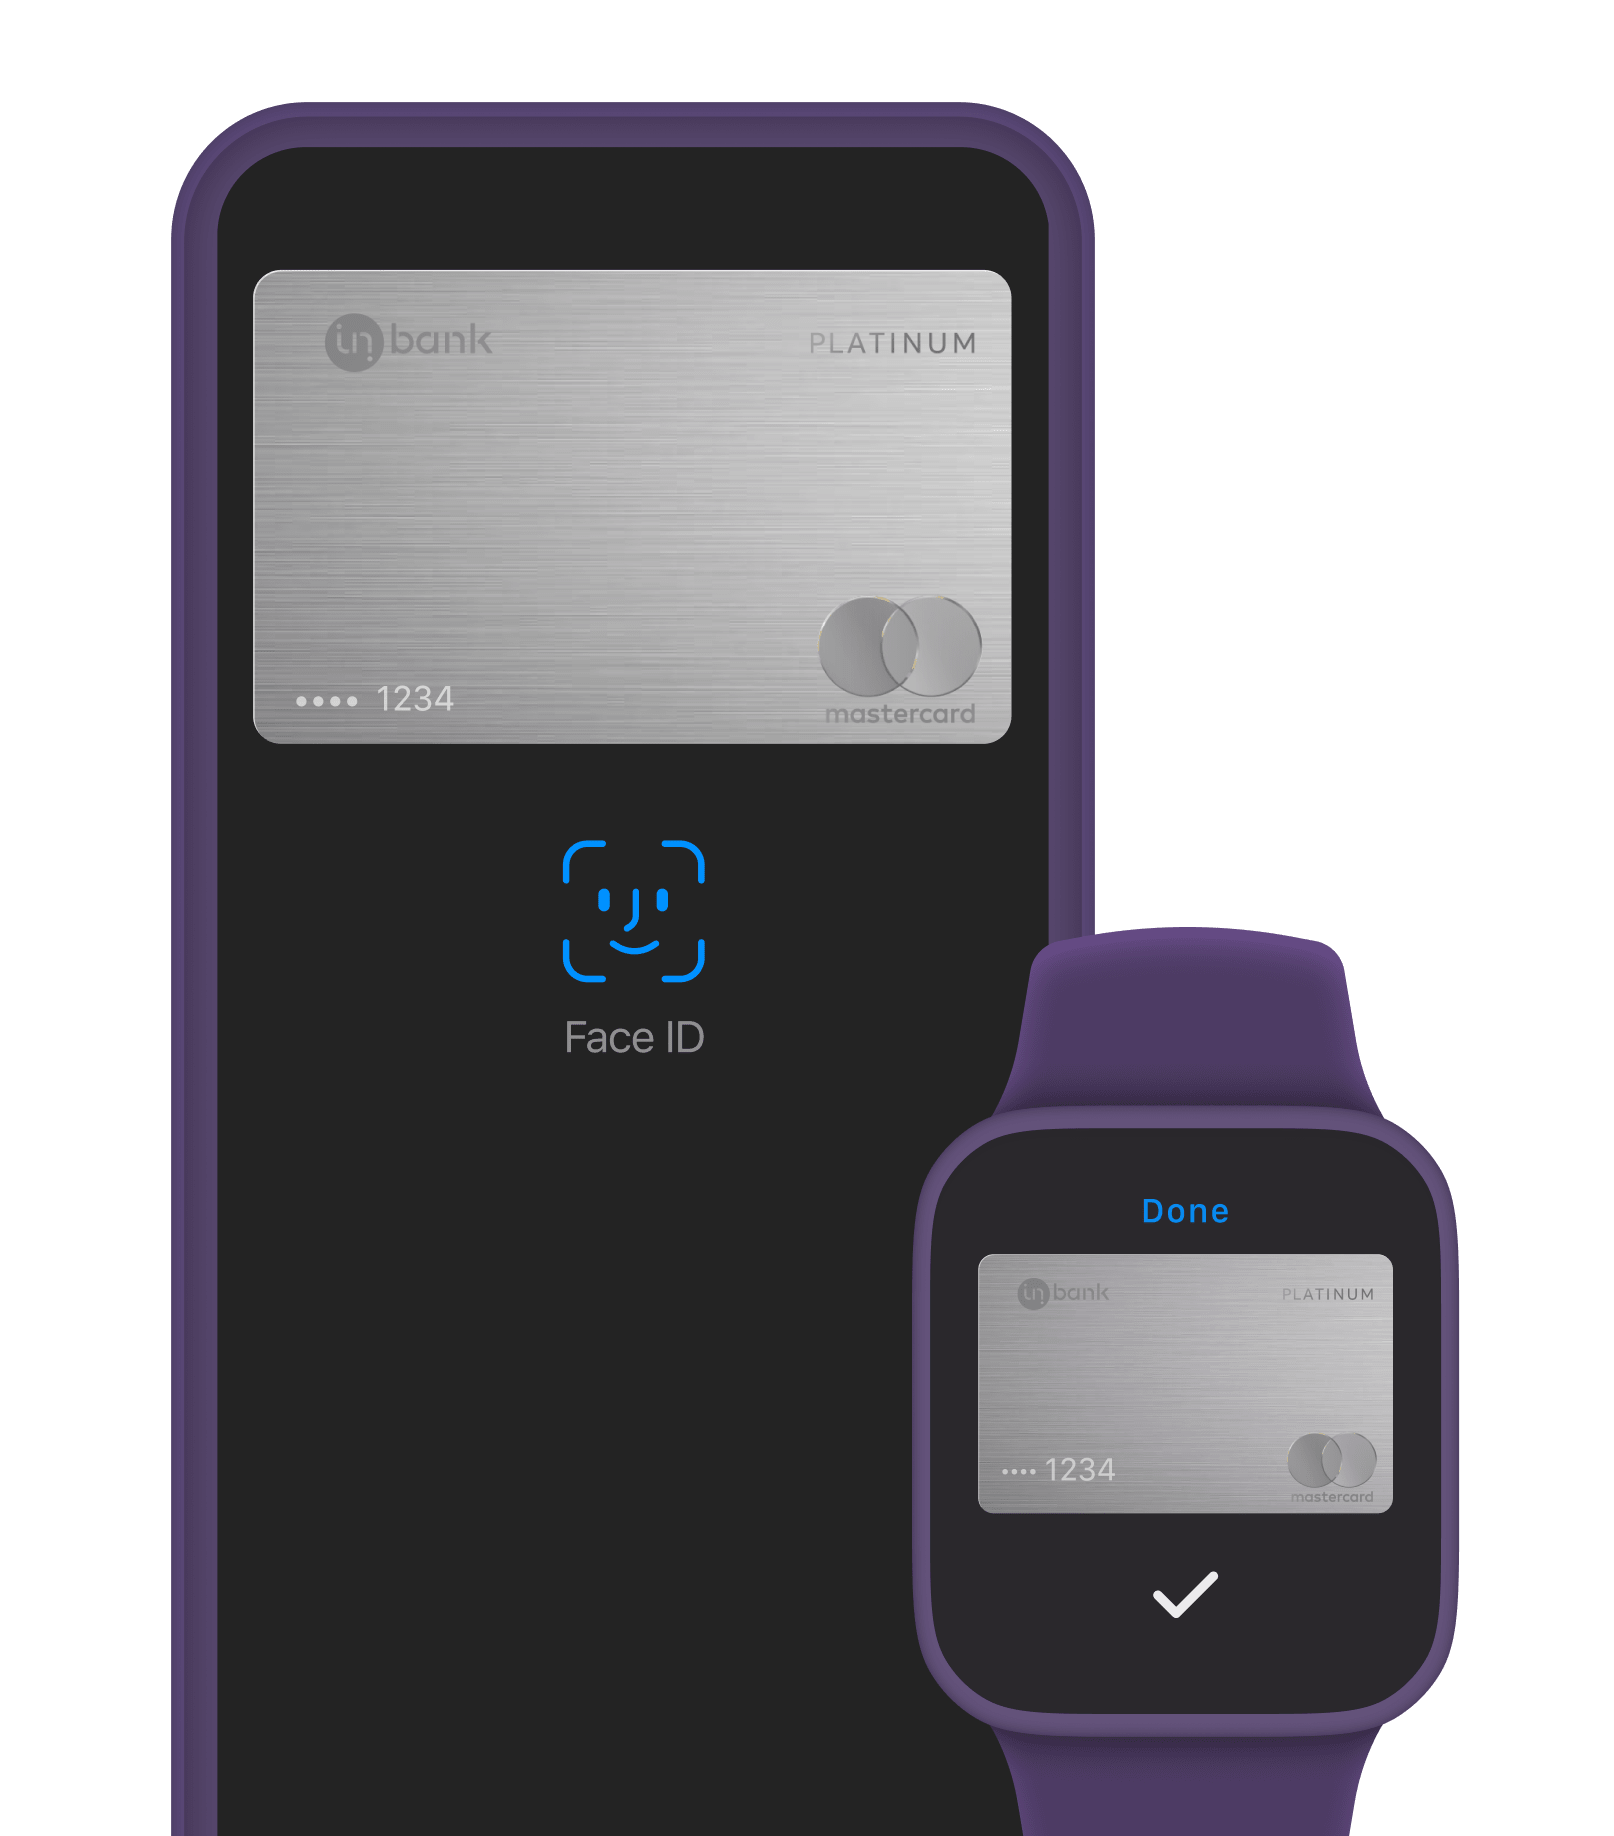 Kasuta Inpay krediitkaarti läbi Apple Pay maksevõimaluse. Inpay pakub Apple Pay maksevõimalust kõikides Apple'i seadmetes.